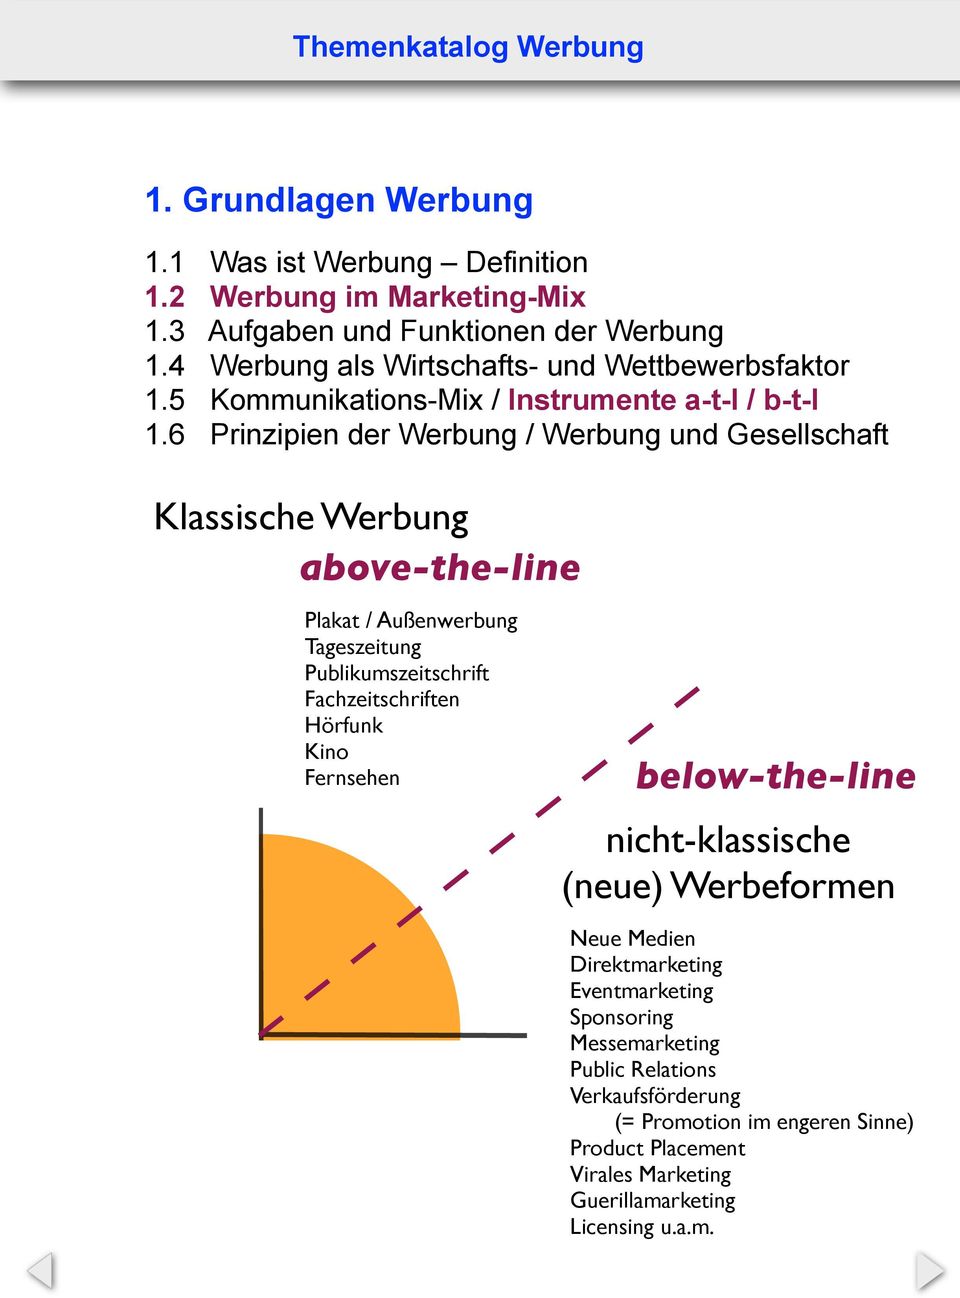 6 Prinzipien der Werbung / Werbung und Gesellschaft Klassische Werbung above-the-line Plakat / Außenwerbung Tageszeitung Publikumszeitschrift Fachzeitschriften